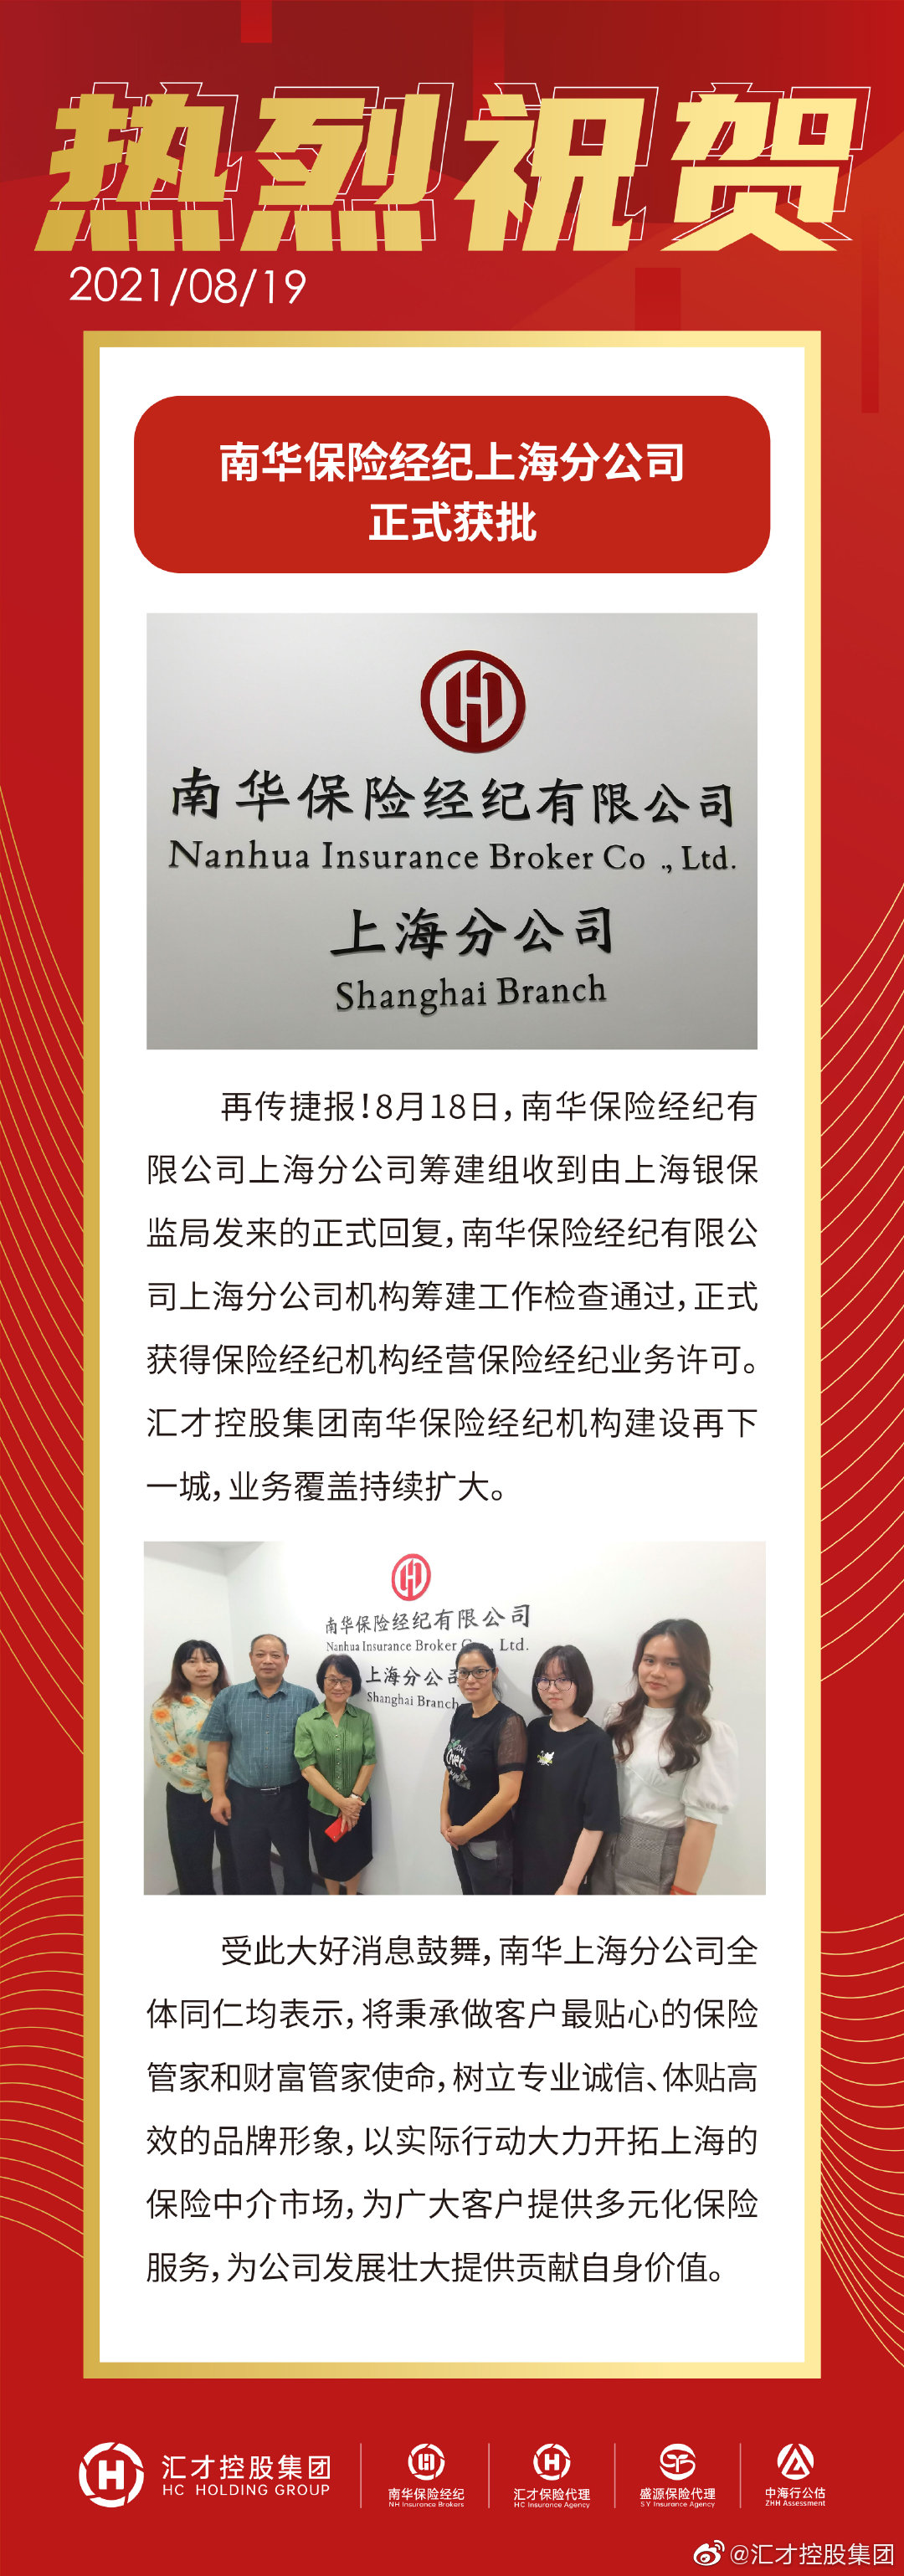 南华保险经纪上海分公司正式获批#保险